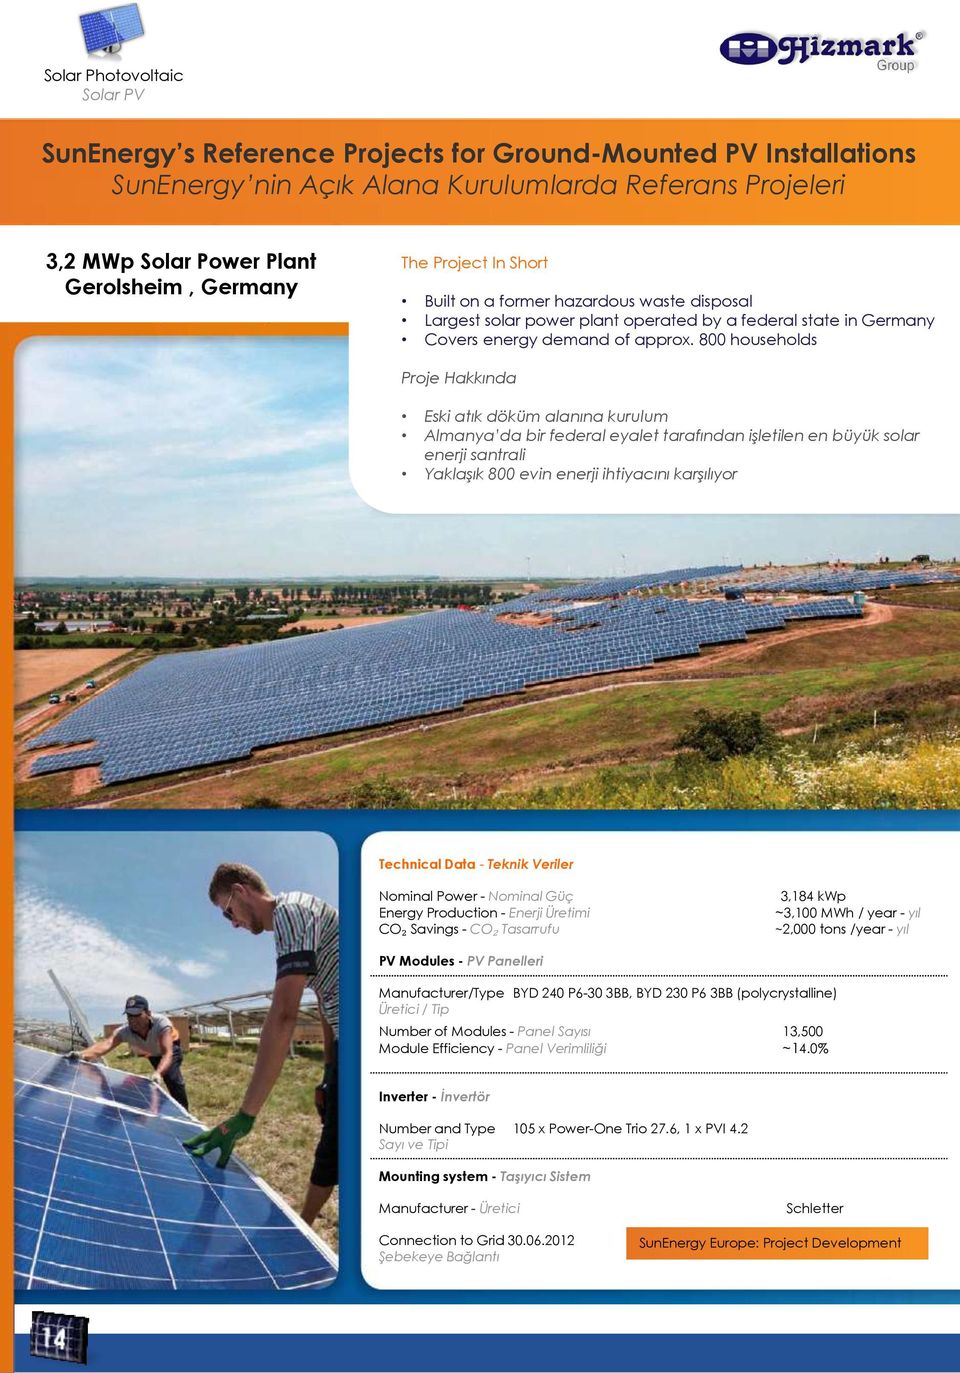 800 households Proje Hakkında Eski atık döküm alanına kurulum Almanya da bir federal eyalet tarafından iģletilen en büyük solar enerji santrali YaklaĢık 800 evin enerji ihtiyacını karģılıyor